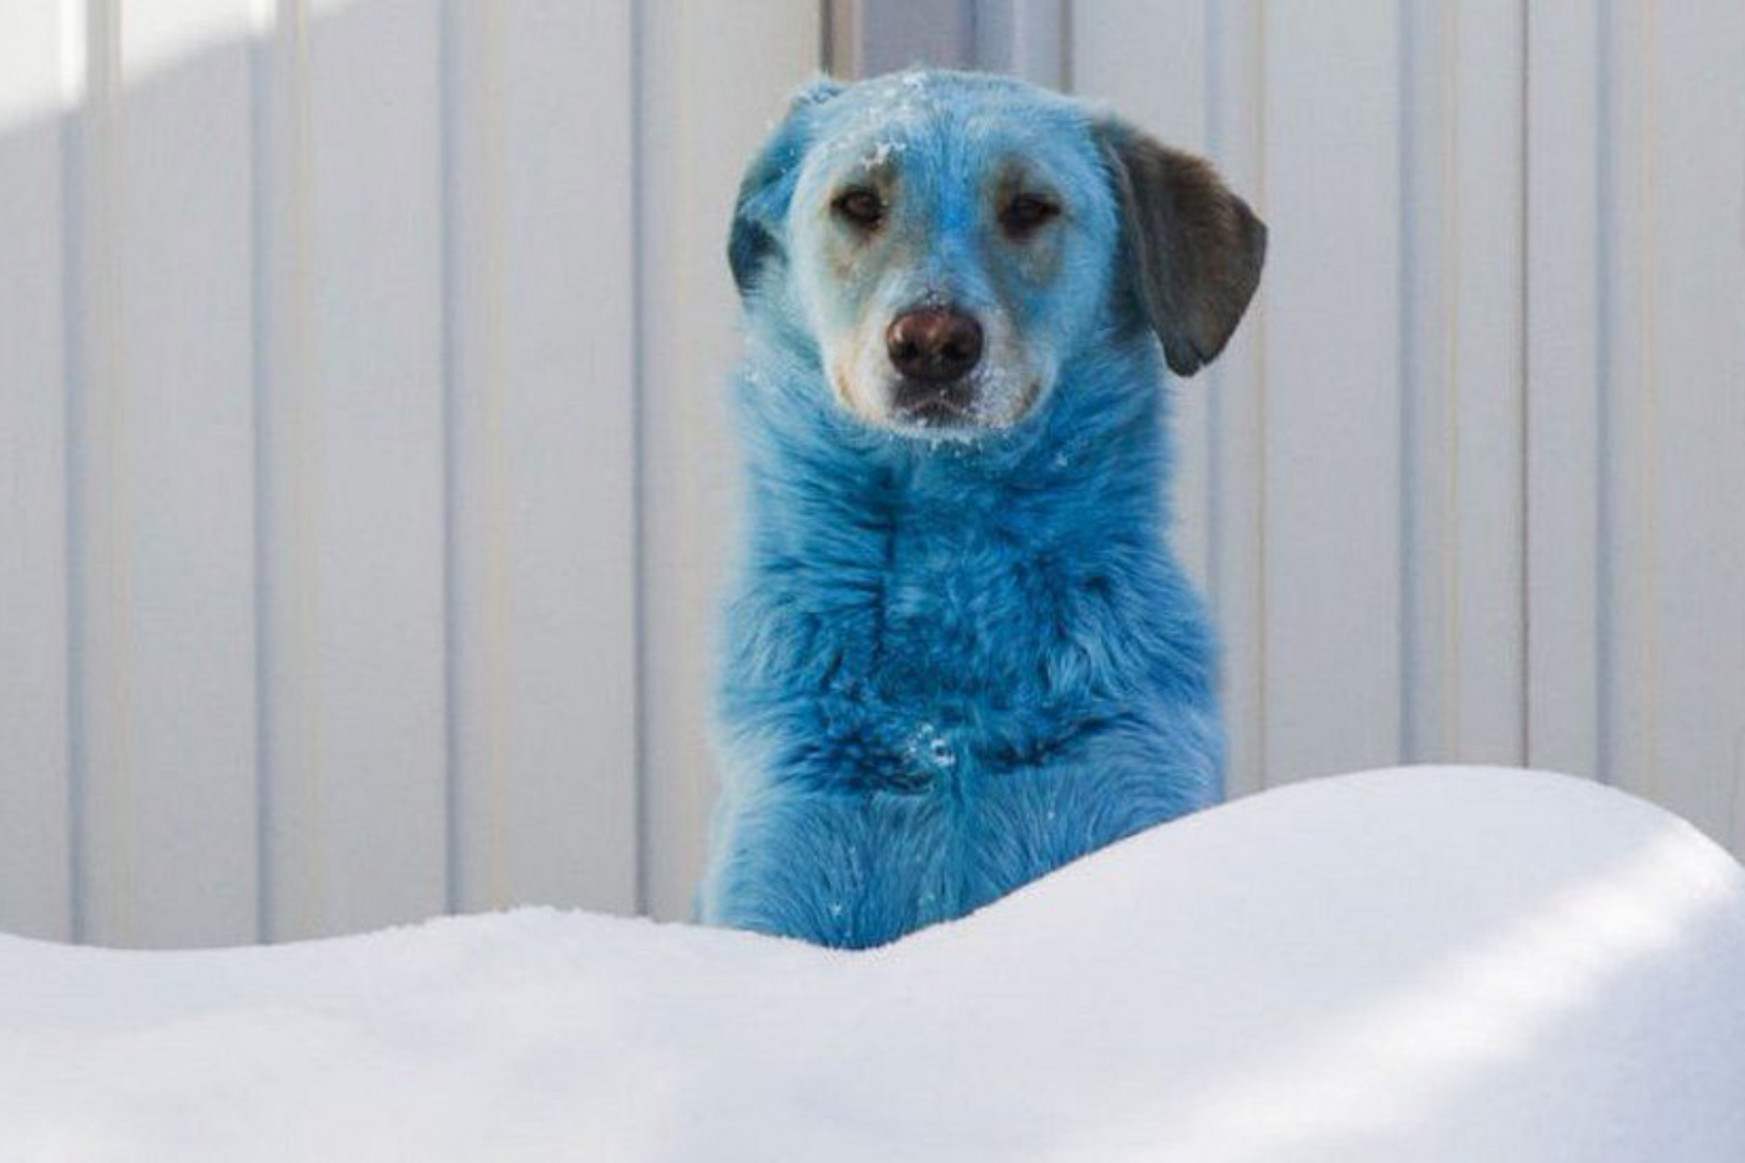 Kék bundájú kóbor kutyákat találtak egy orosz iparváros közelében